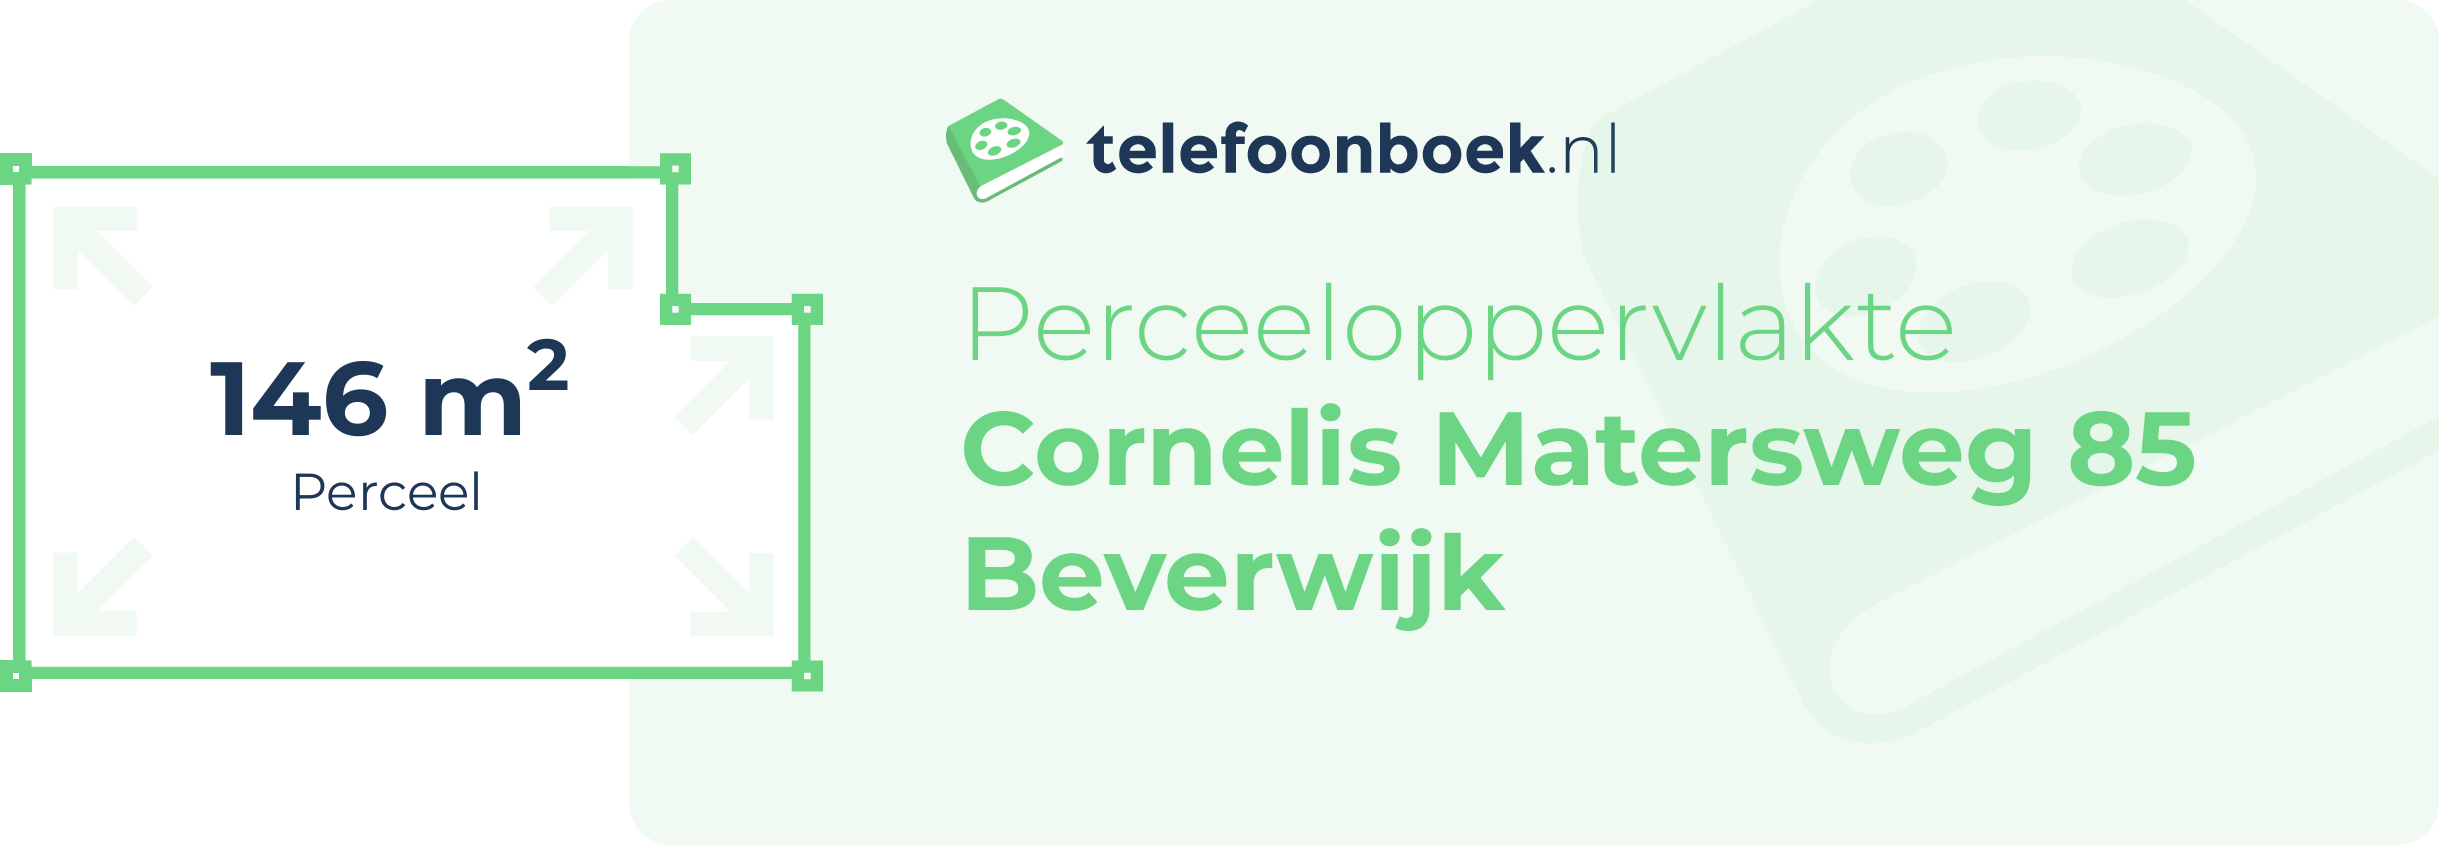 Perceeloppervlakte Cornelis Matersweg 85 Beverwijk